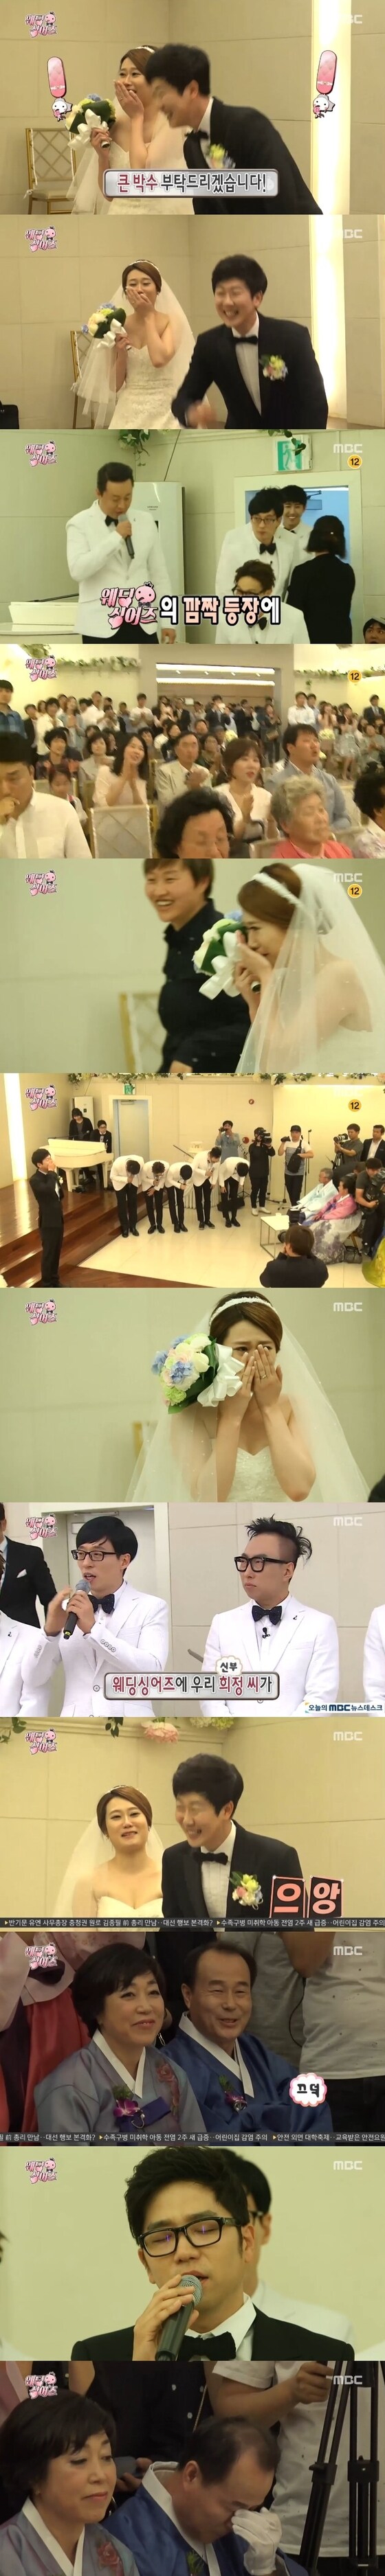 '무한도전' 웨딩 싱어즈가 막을 내렸다. © News1star / MBC '무한도전' 캡처